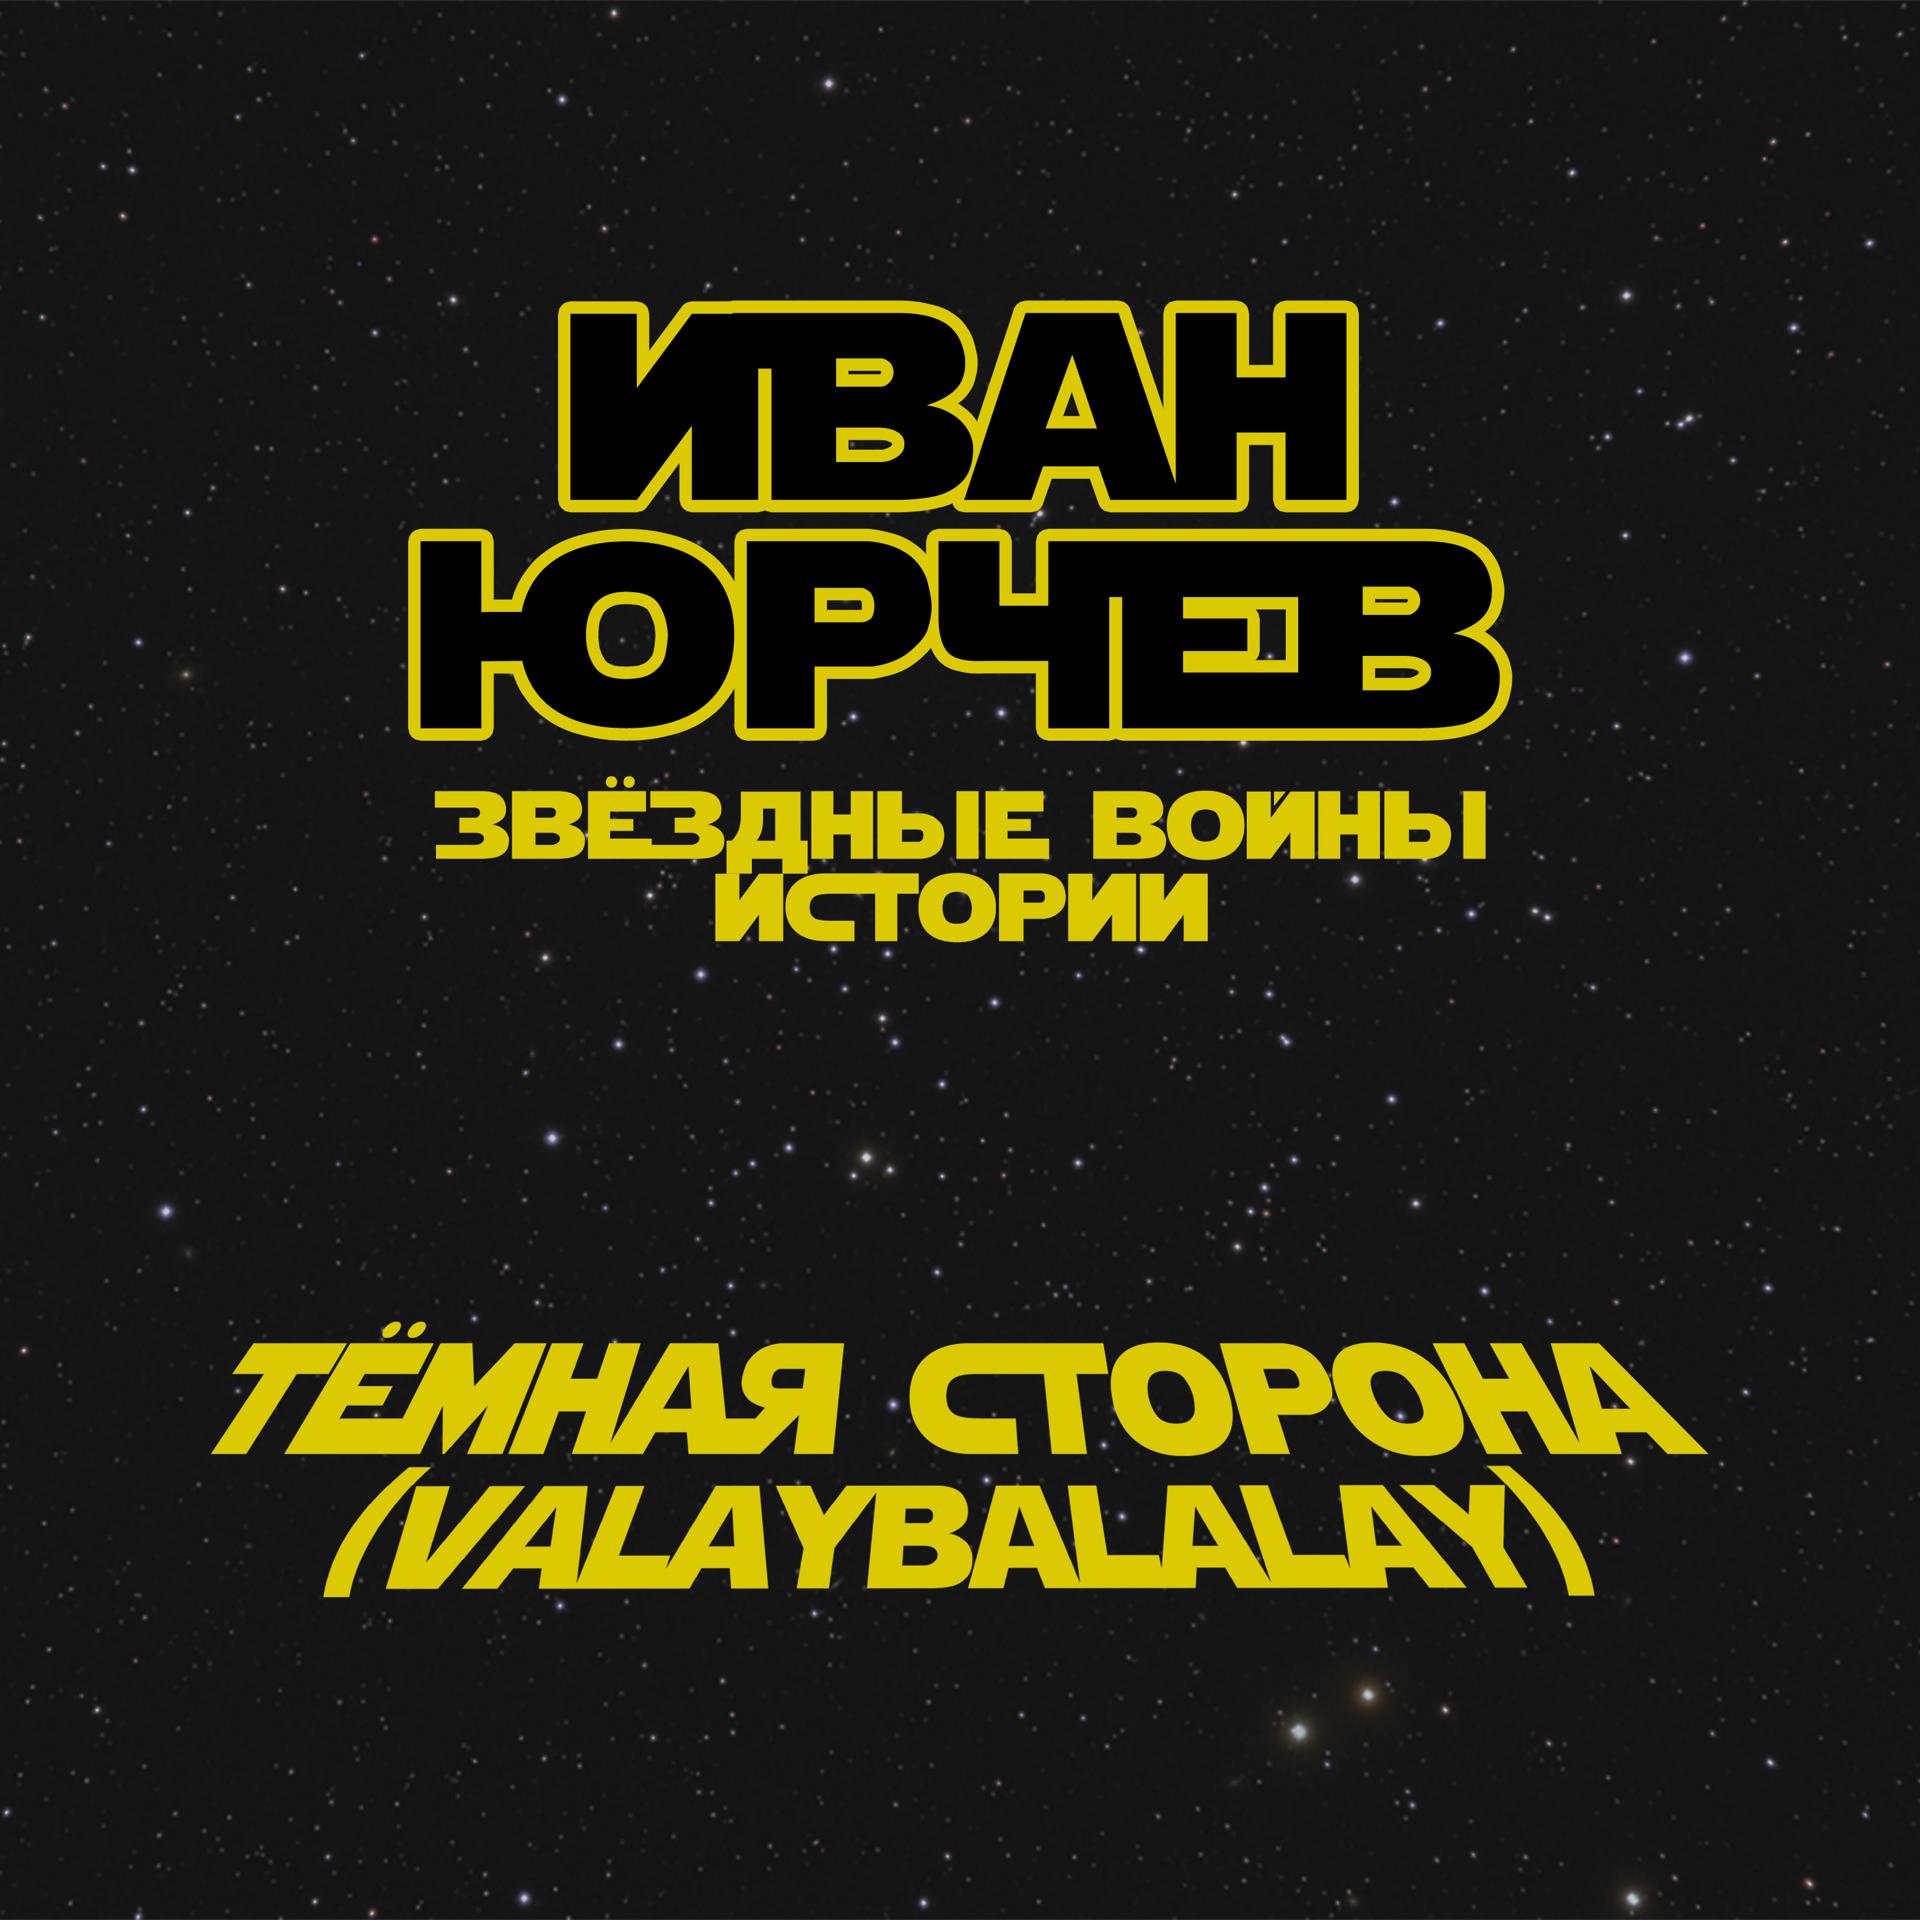 Постер альбома Тёмная сторона (Valaybalalay) (Звёздные войны. Истории)